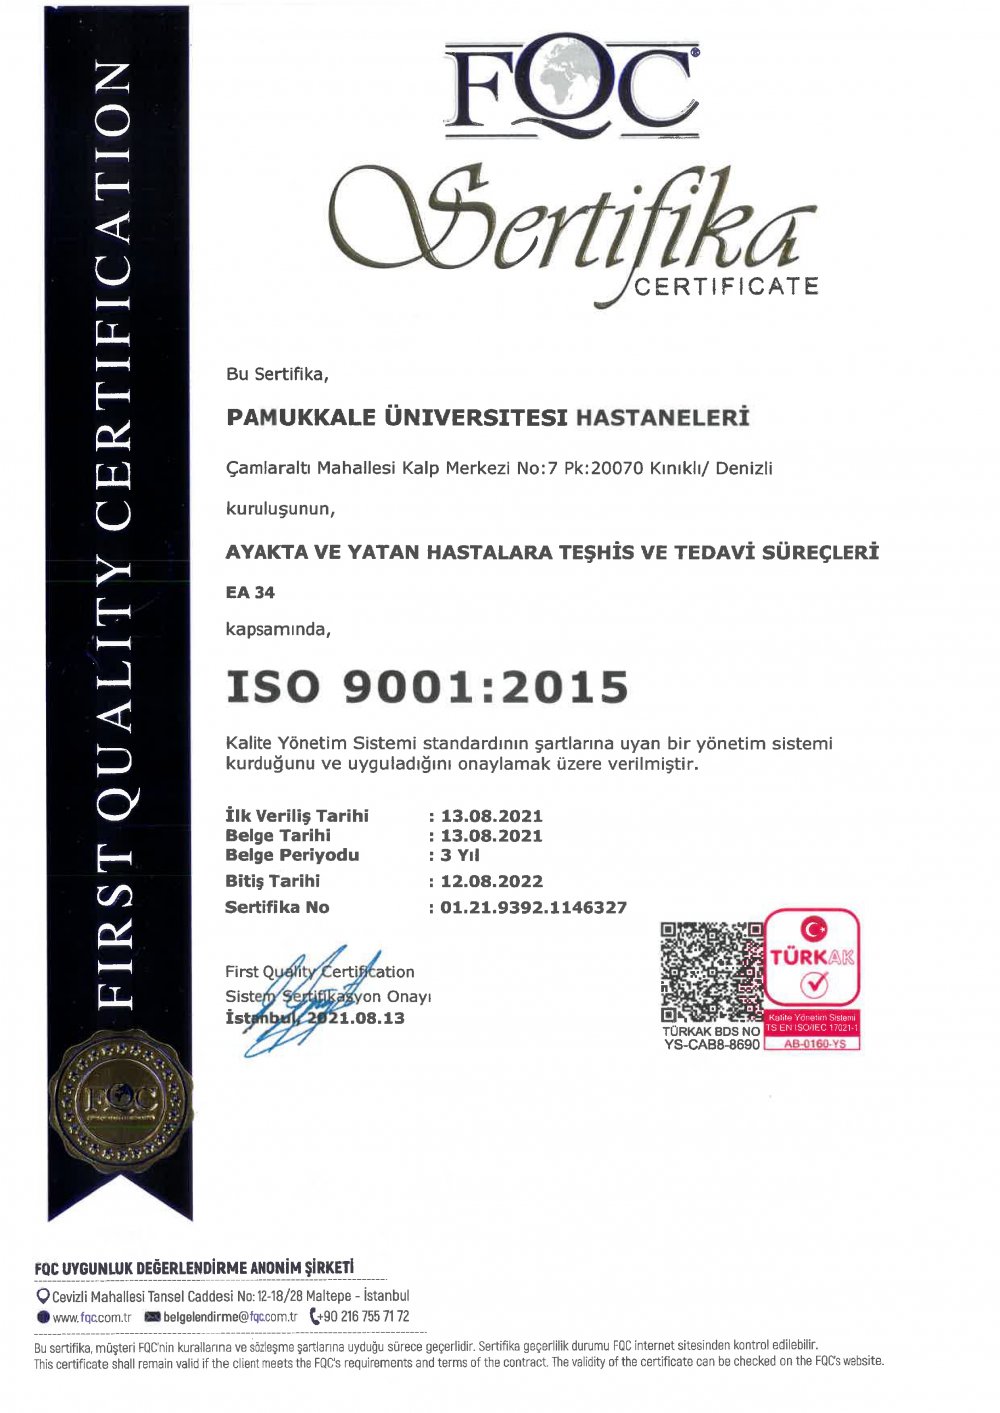 Pamukkale Üniversitesi Hastaneleri, ISO/IEC 27001:2013 Bilgi Güvenliği Yönetim Sistemi / ISO 9001:2015 Kalite Yönetim Sistemi Belgelerini aldı